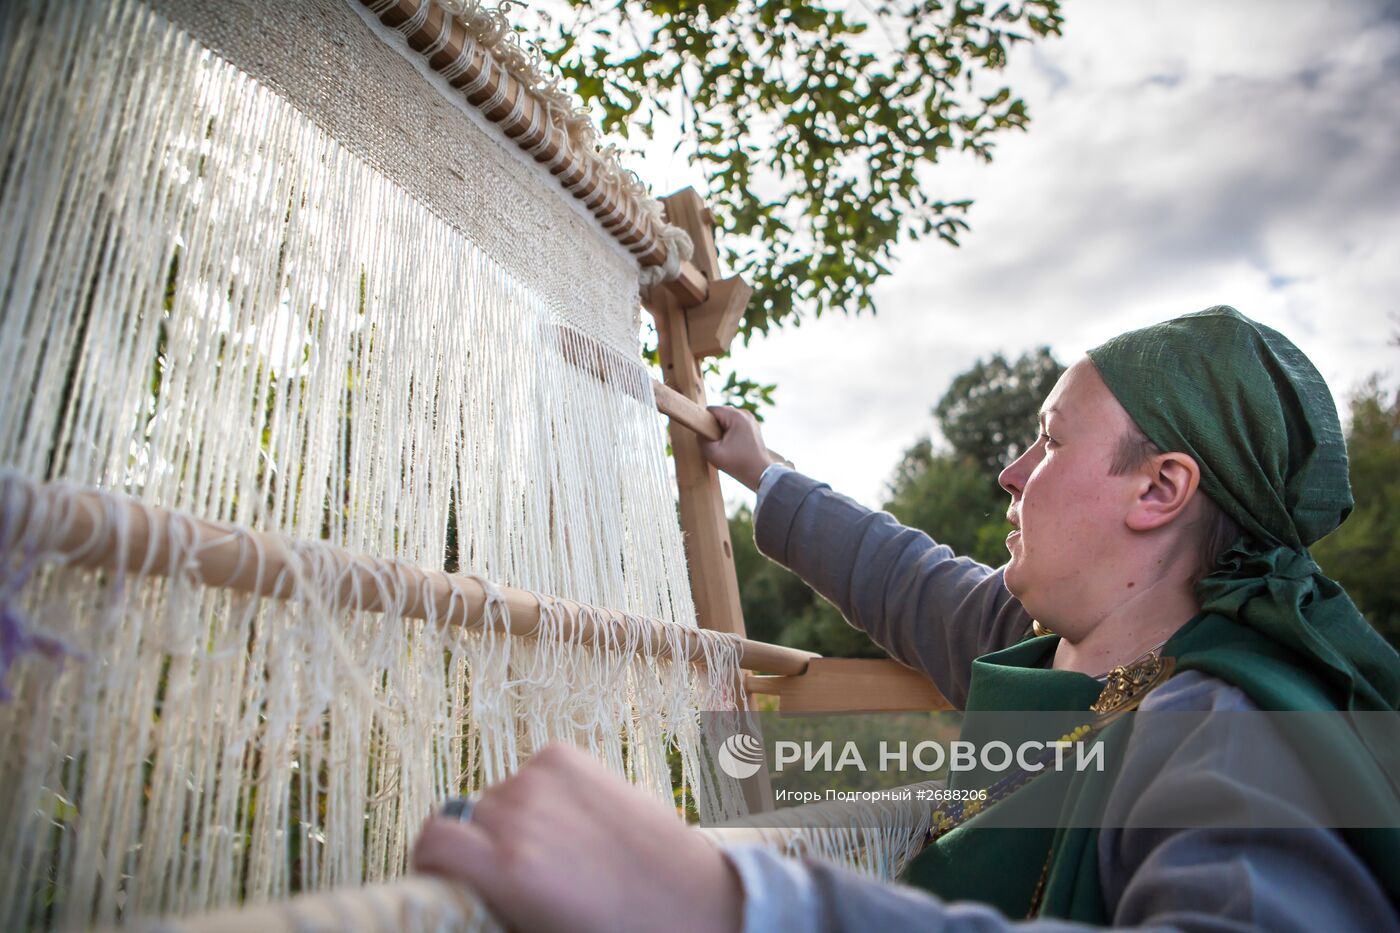 Фестиваль средневековой реконструкции "Онего. Легенды Севера" в Петрозаводске